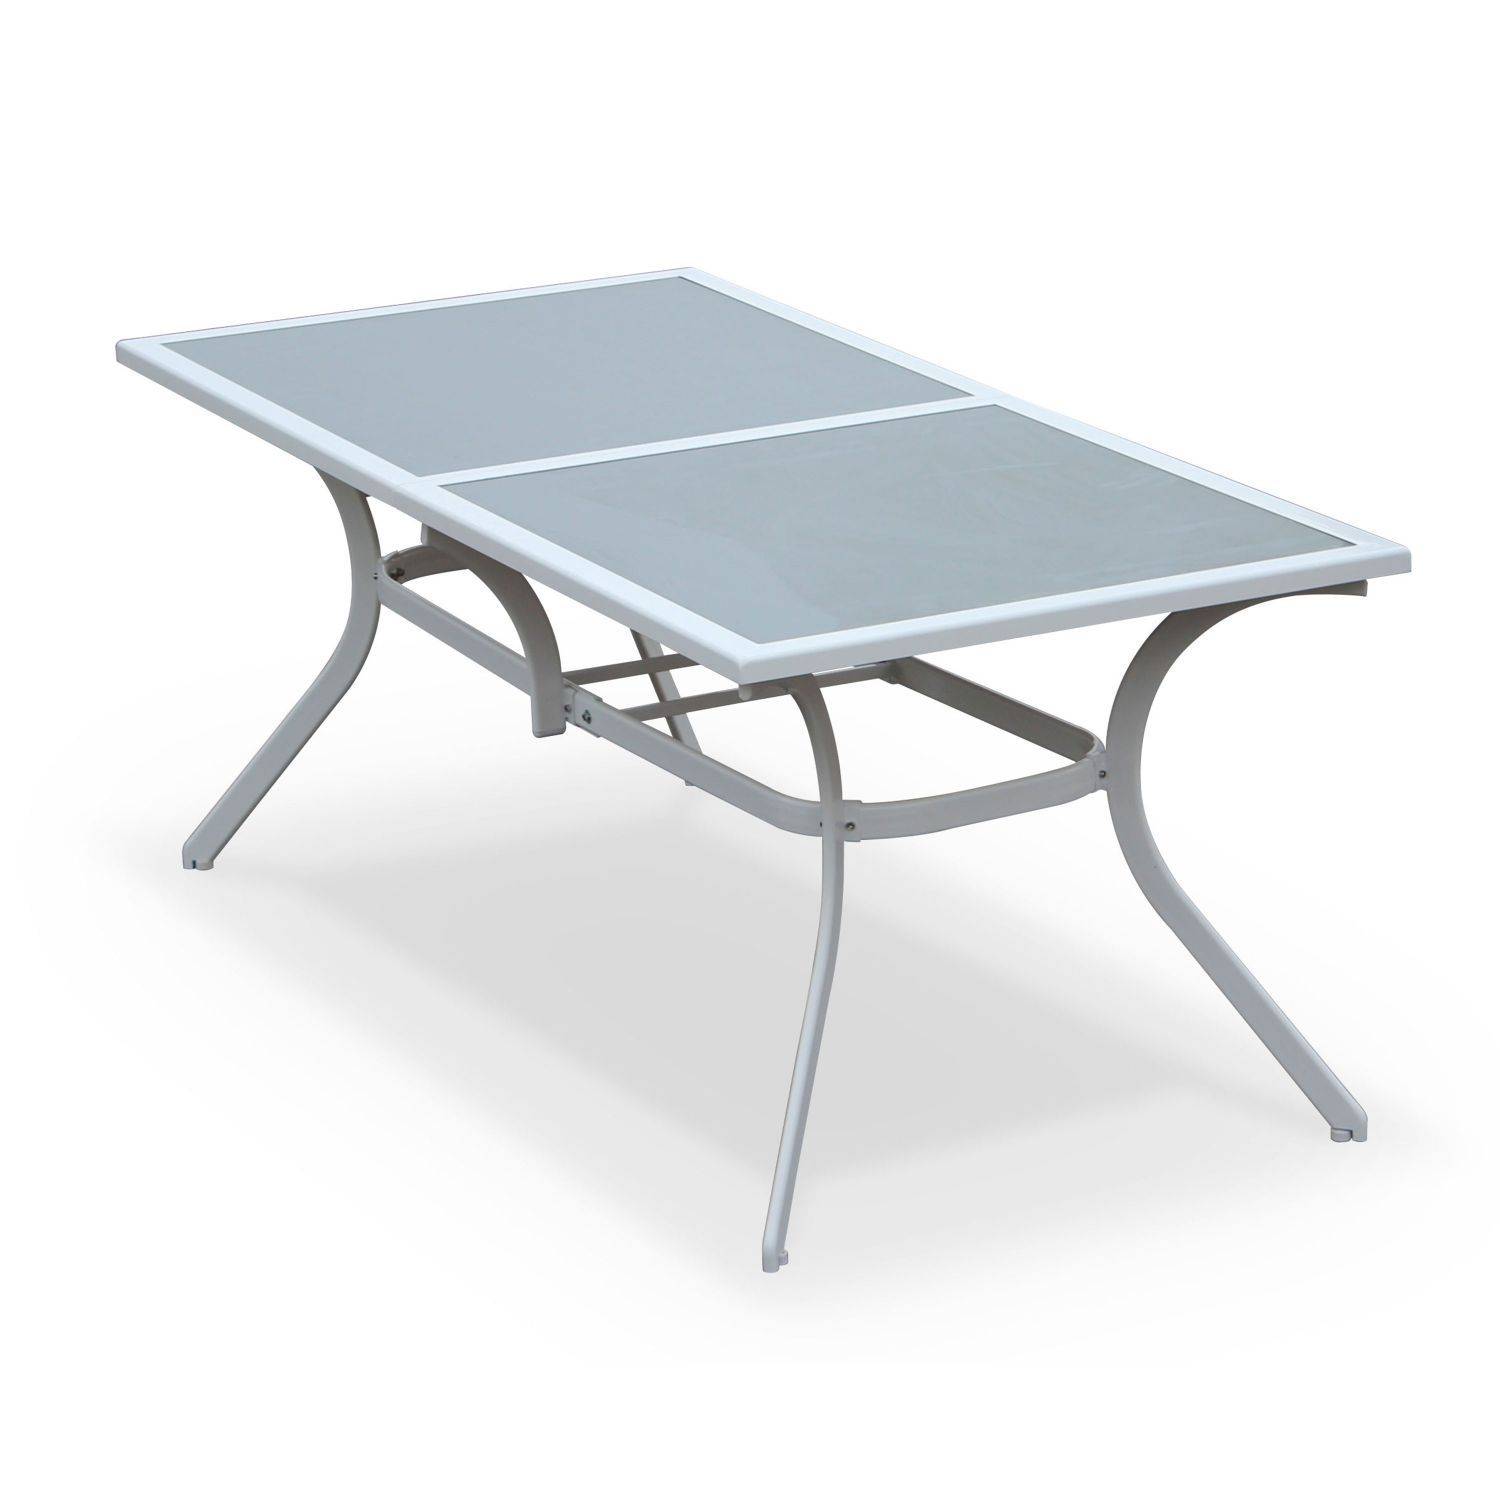 Gartengarnitur aus Aluminium und Textilene - Naevia - Grau, Weiß - 8 Sitze - 1 großer rechteckiger Tisch, 8 Klappstühle Photo3